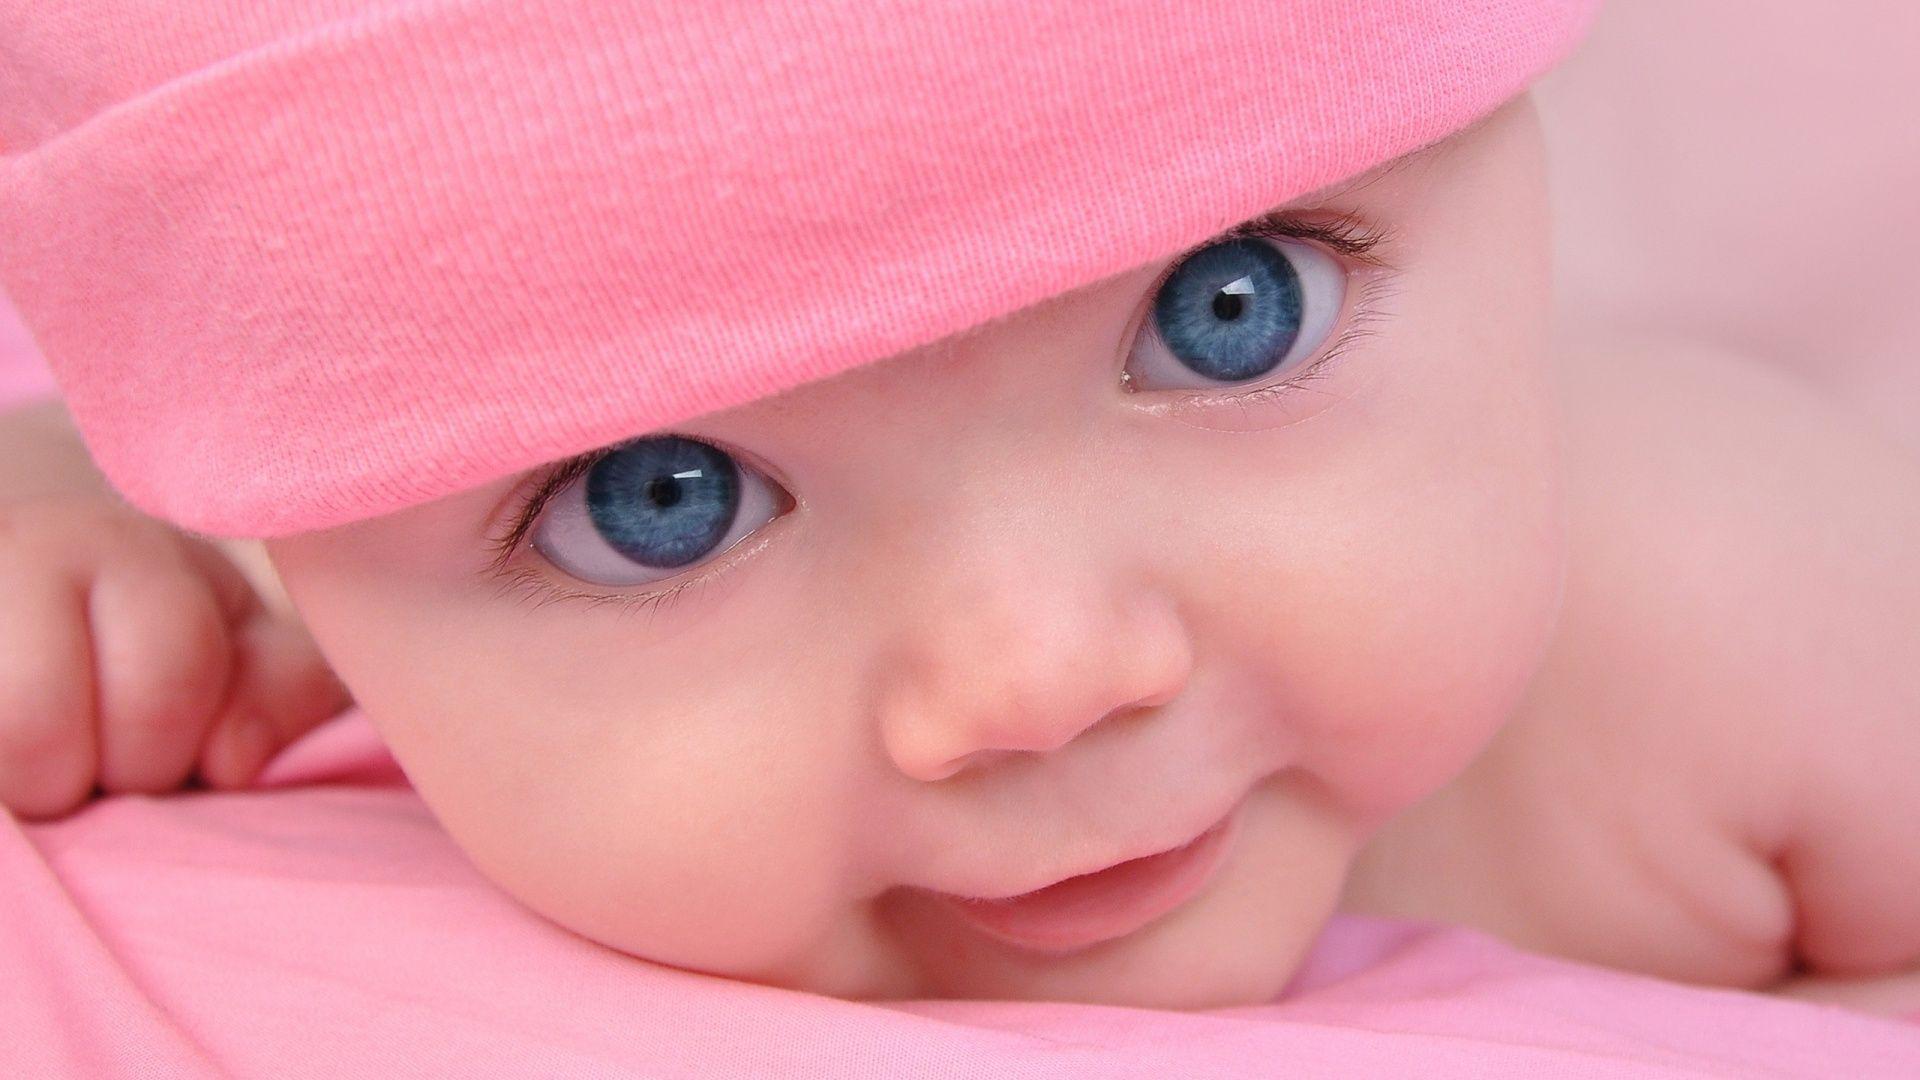 Cute Babies Wallpapers - Top Free Cute